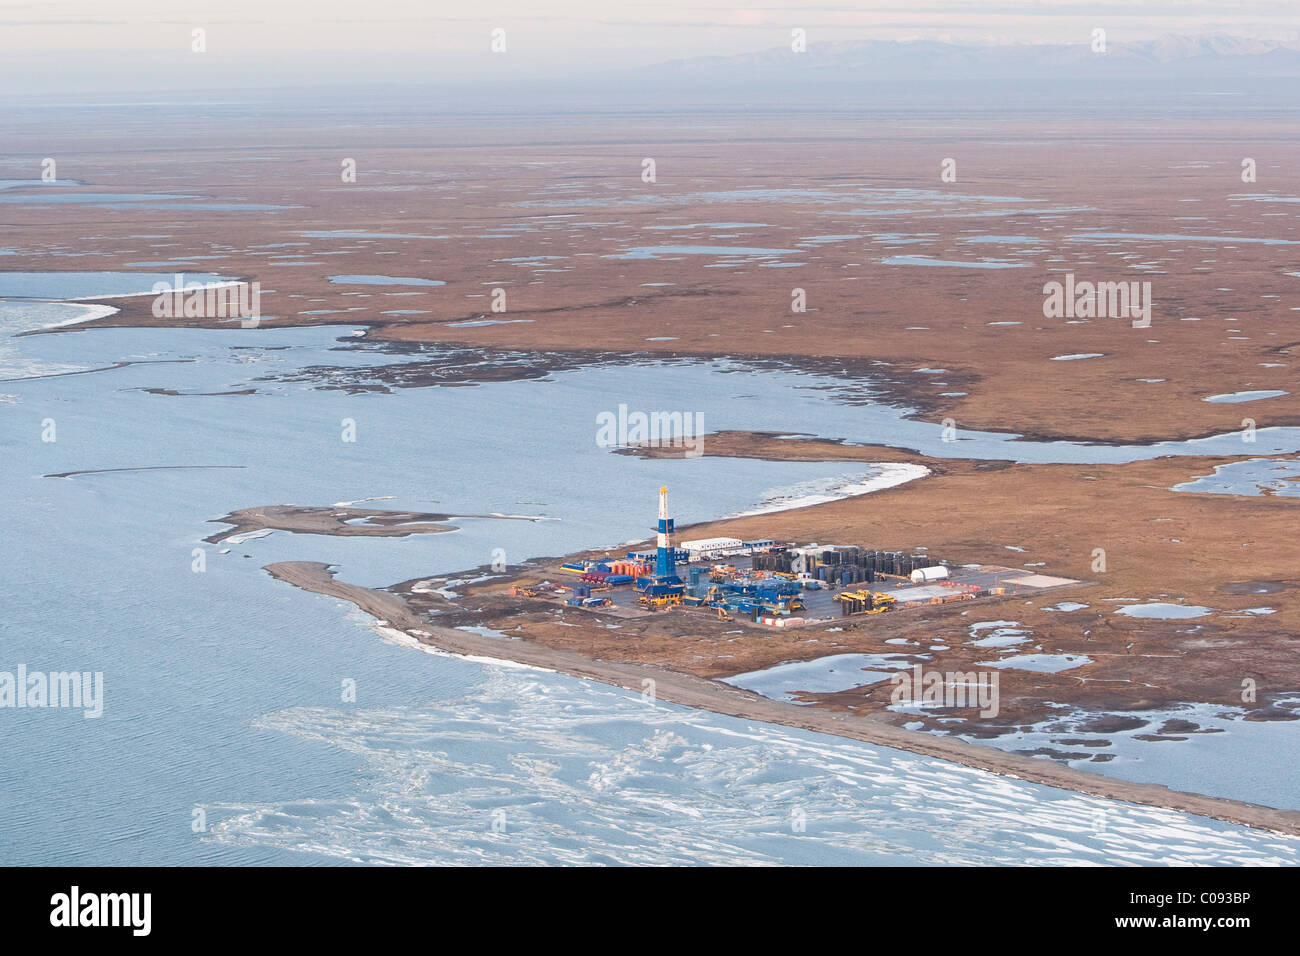 Vue aérienne d'une plate-forme de forage de puits de pétrole dans la toundra au bord de la mer de Beaufort, Alaska arctique, l'été Banque D'Images